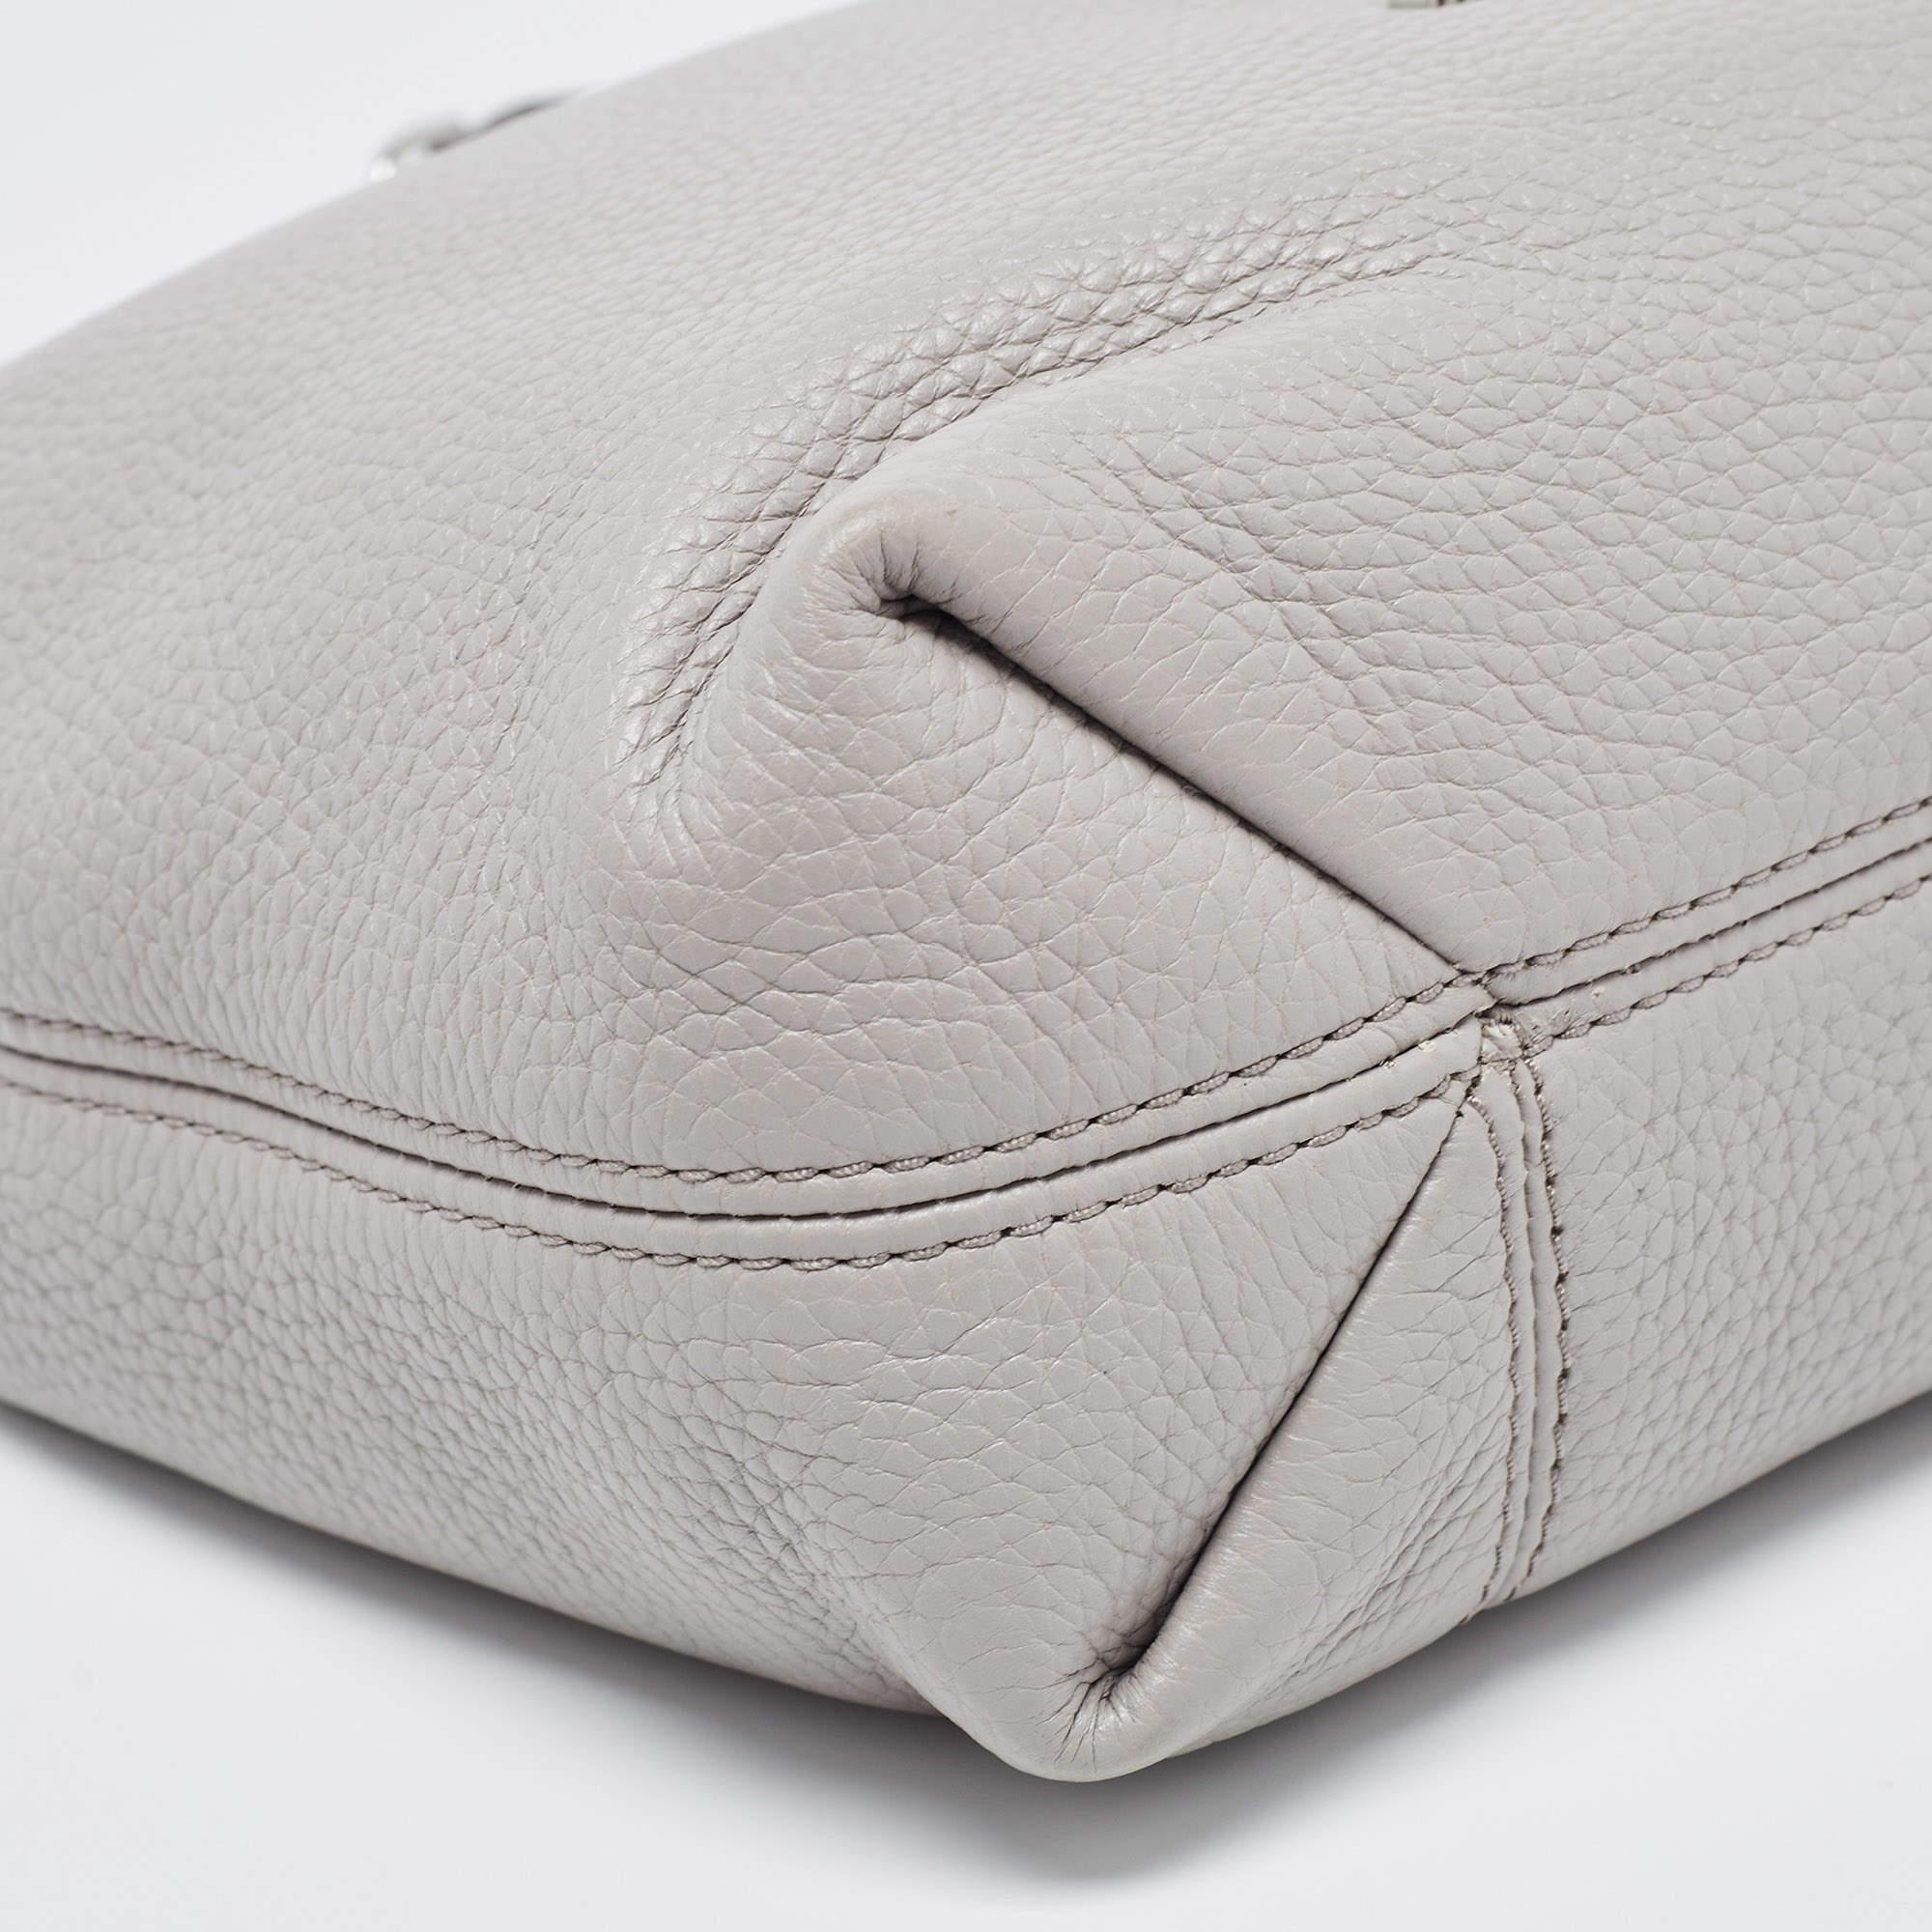 Michael Kors Grey Leather Medium Jet Set Chain Shoulder Bag 3